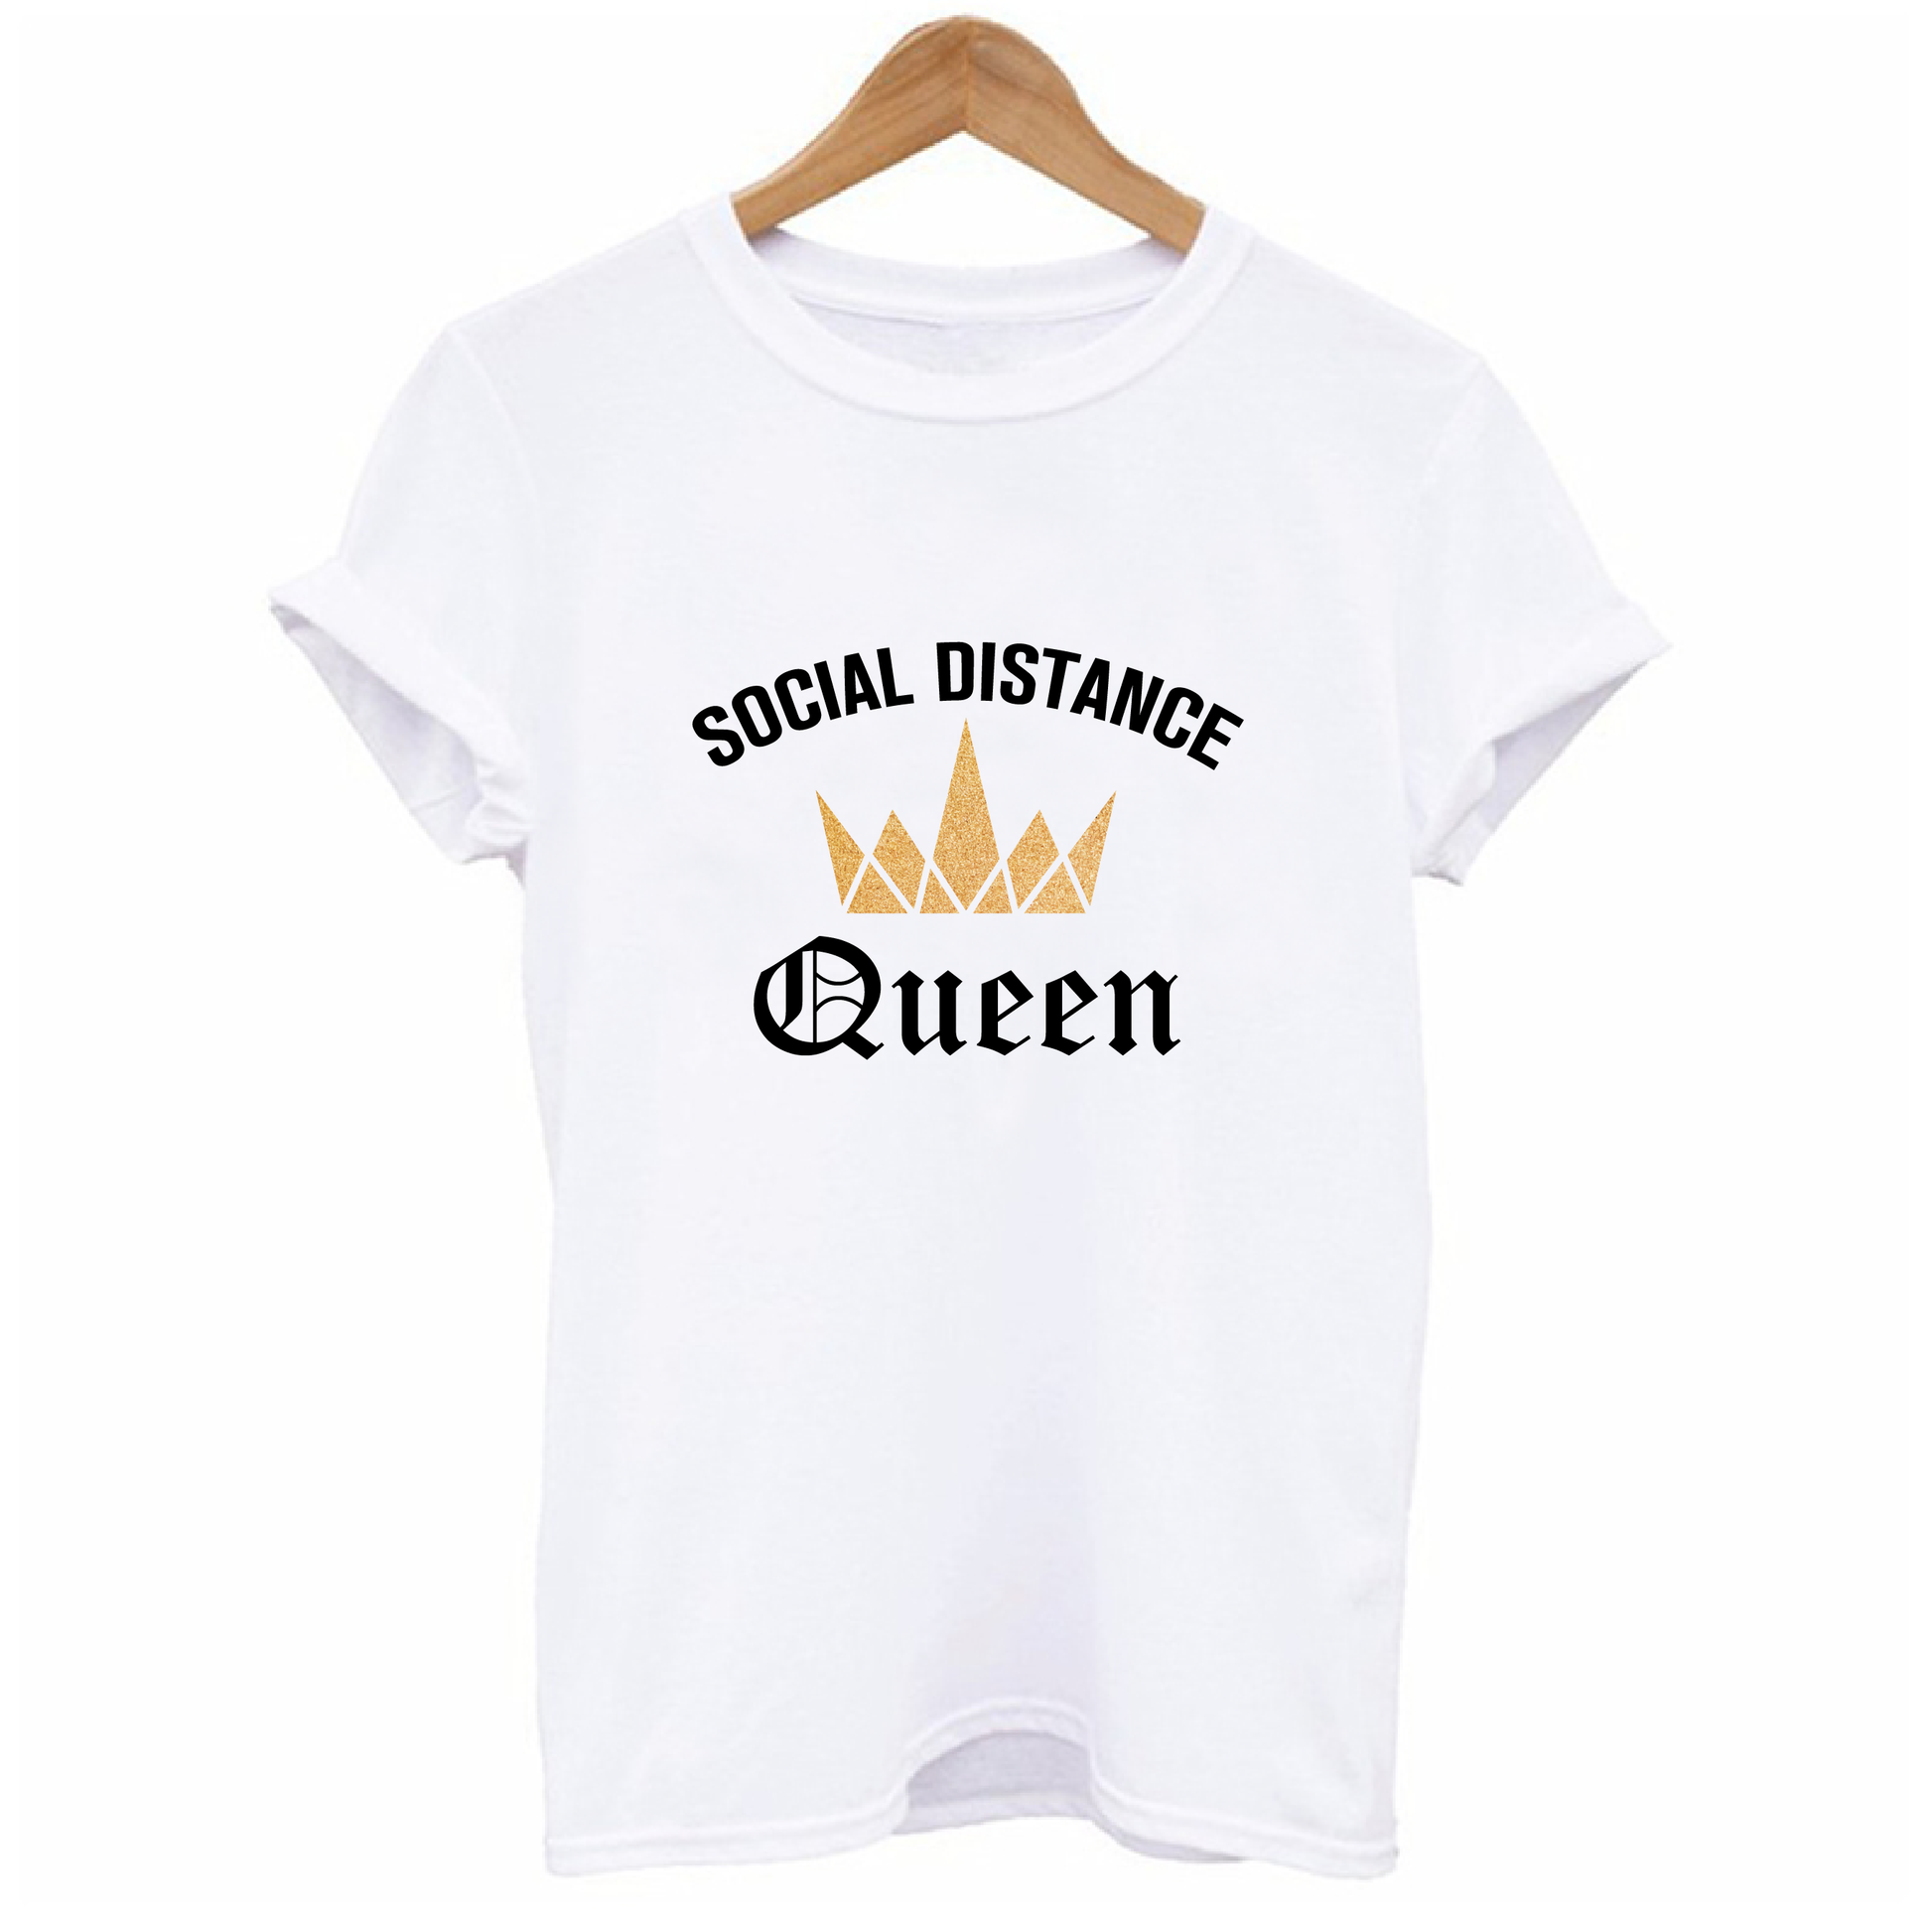 Social Distance Queen T-shirt